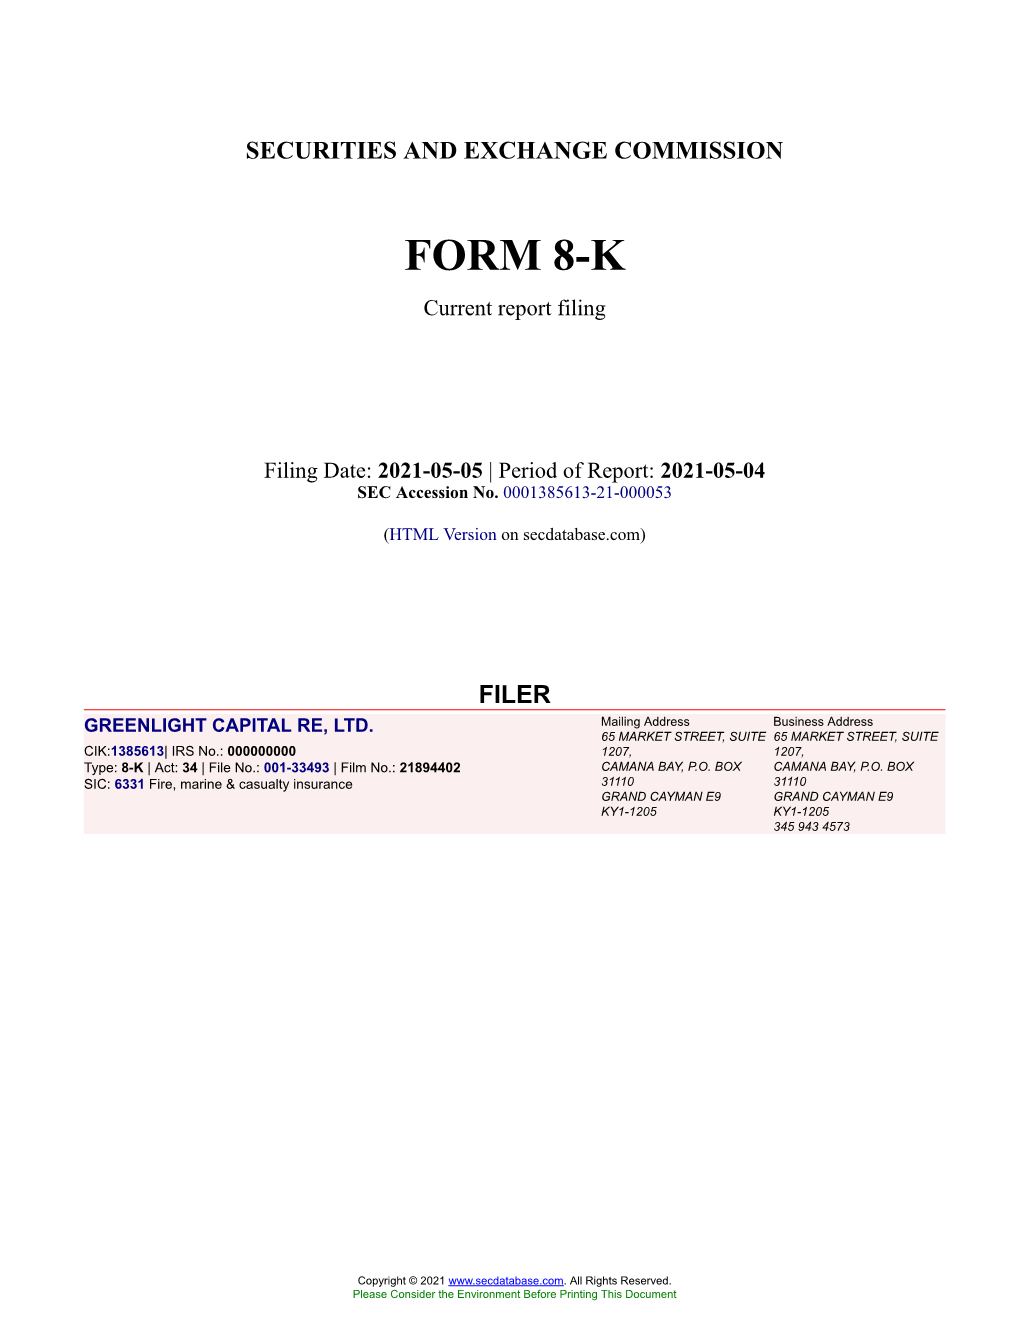 GREENLIGHT CAPITAL RE, LTD. Form 8-K Current Event Report